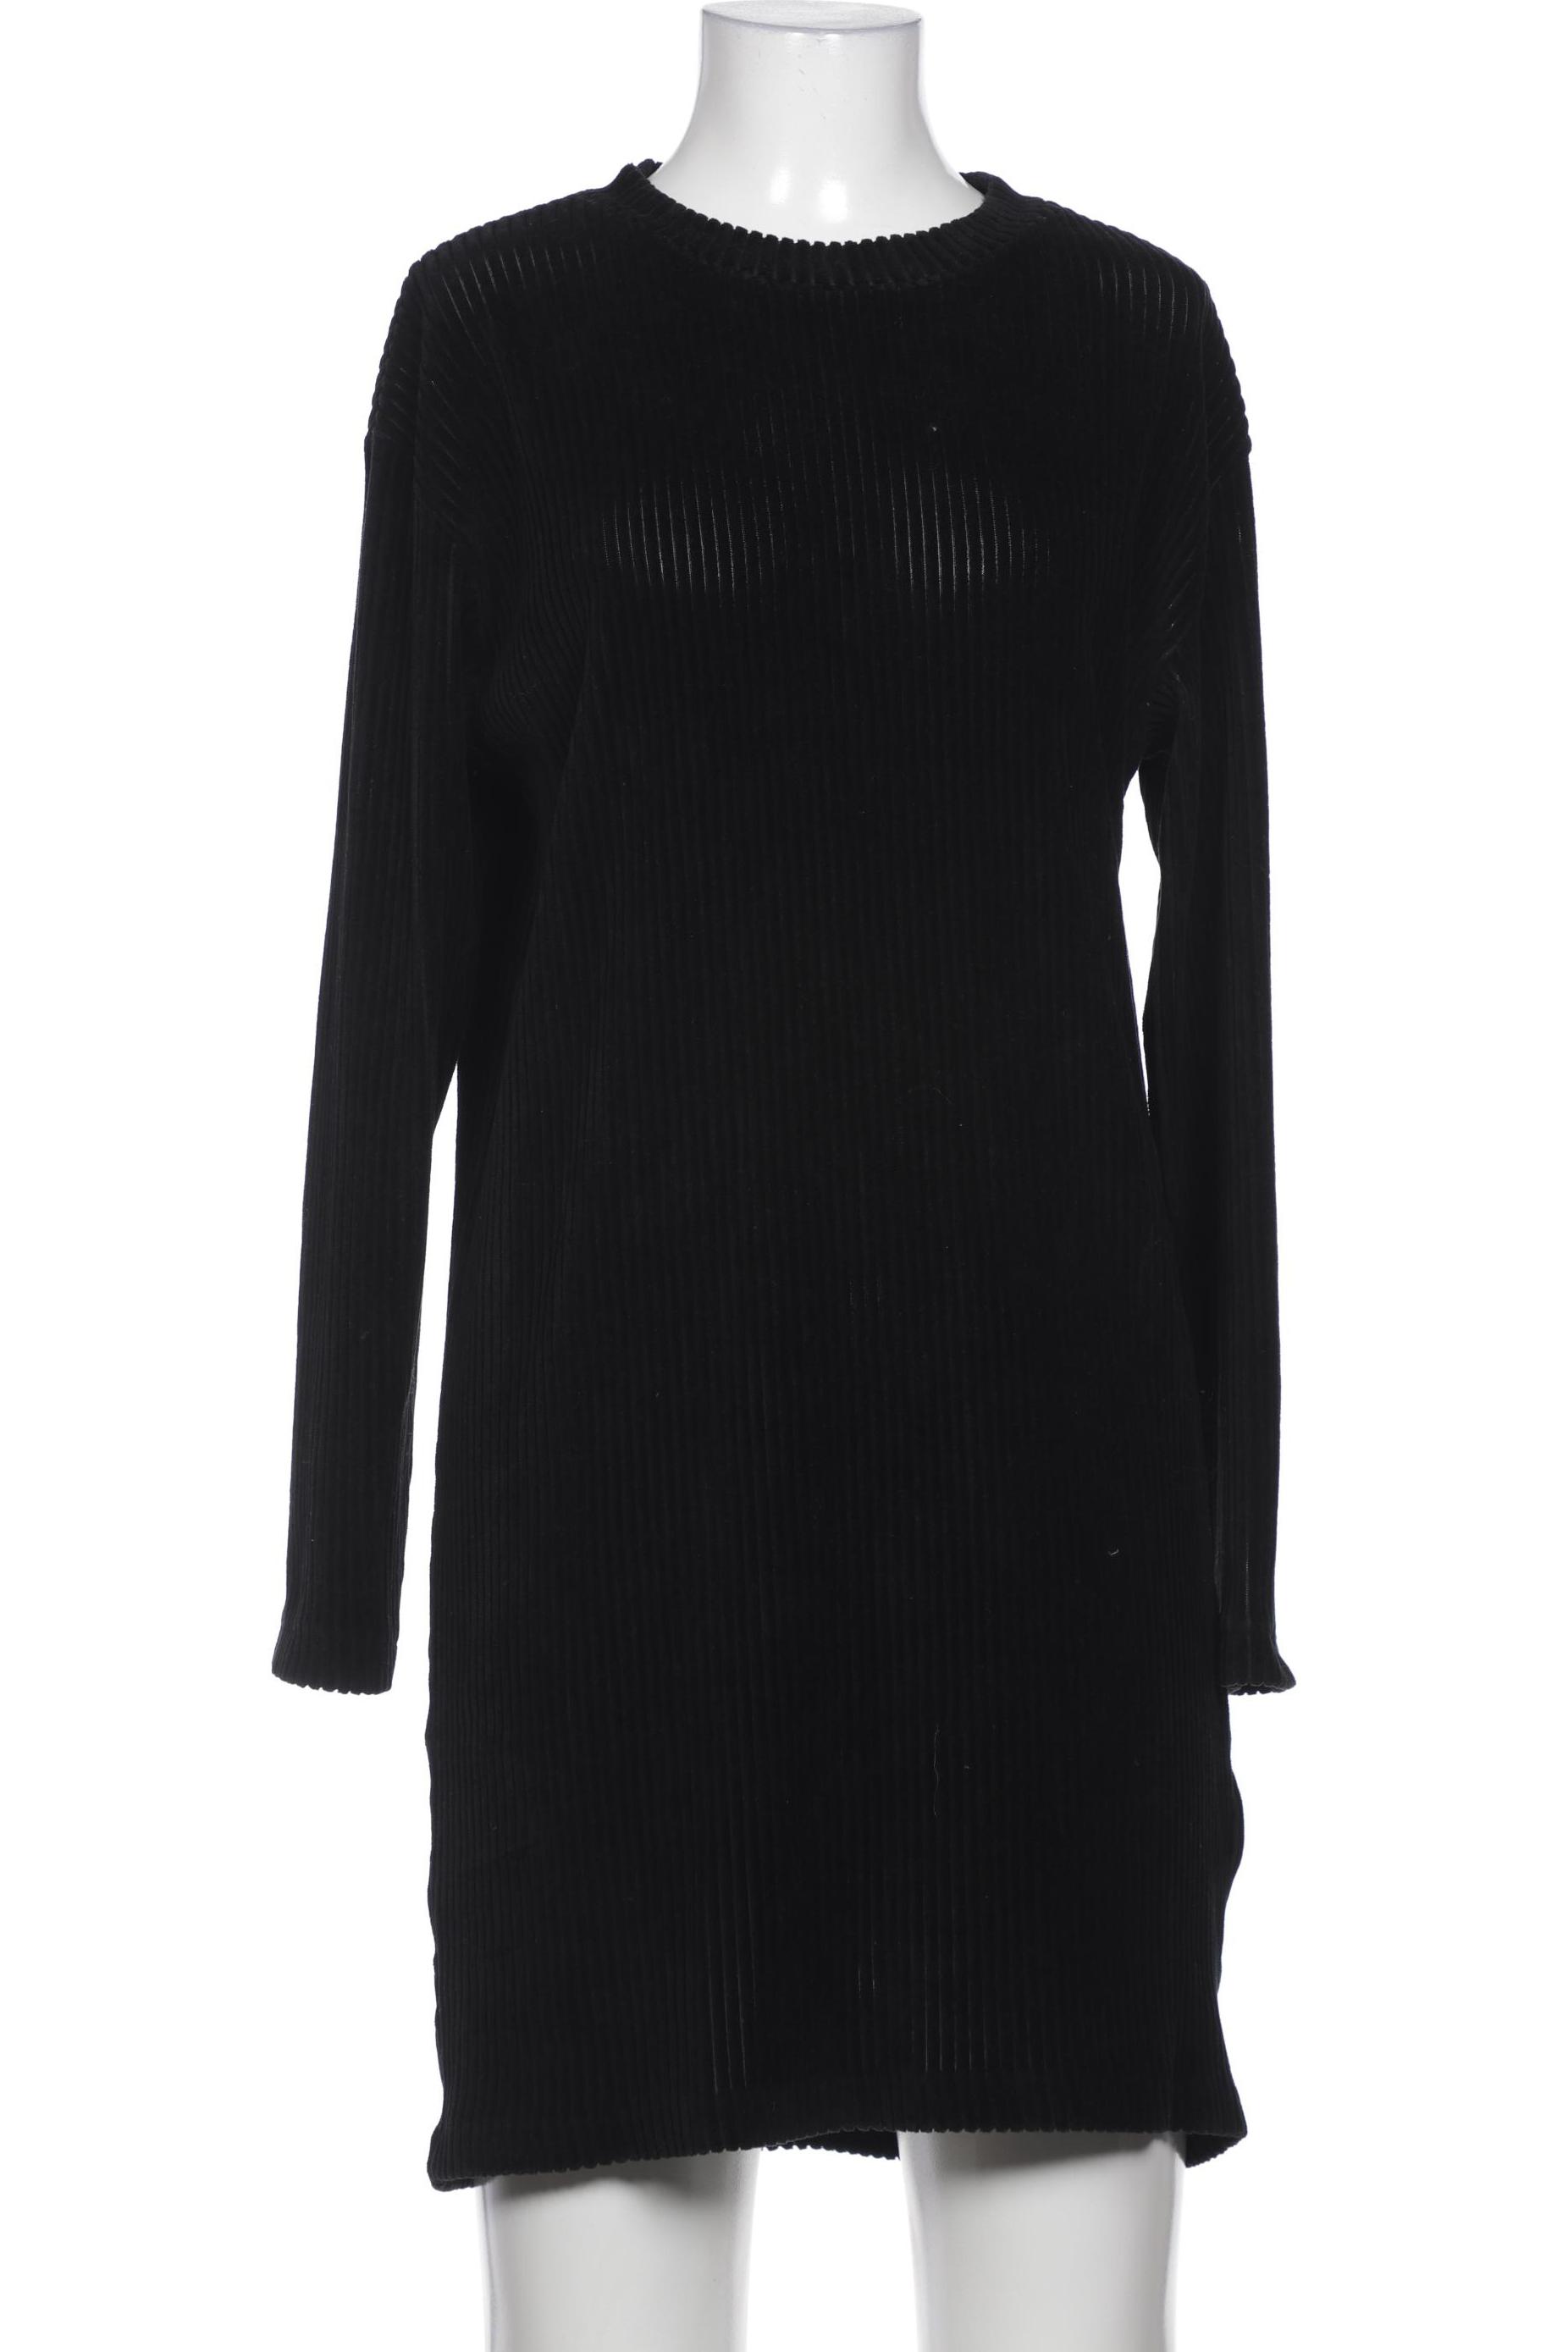 Weekday Damen Kleid, schwarz, Gr. 36 von Weekday